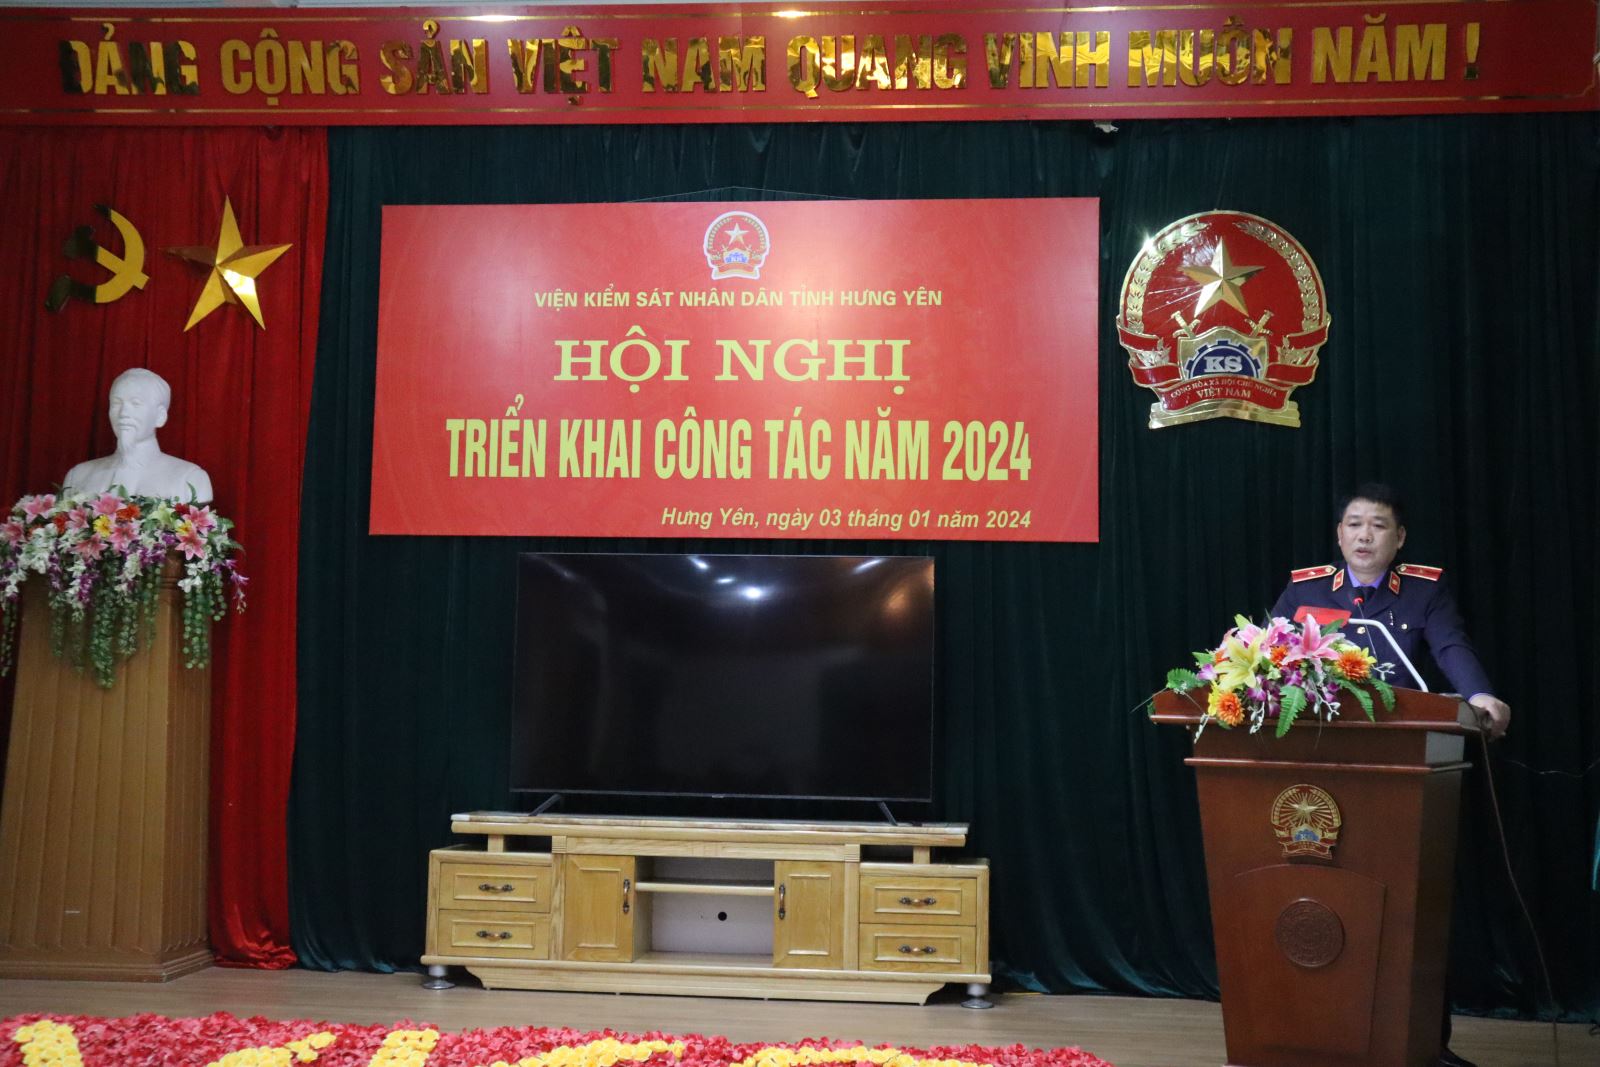 Viện kiểm sát nhân dân tỉnh Hưng Yên triển khai công tác năm 2024